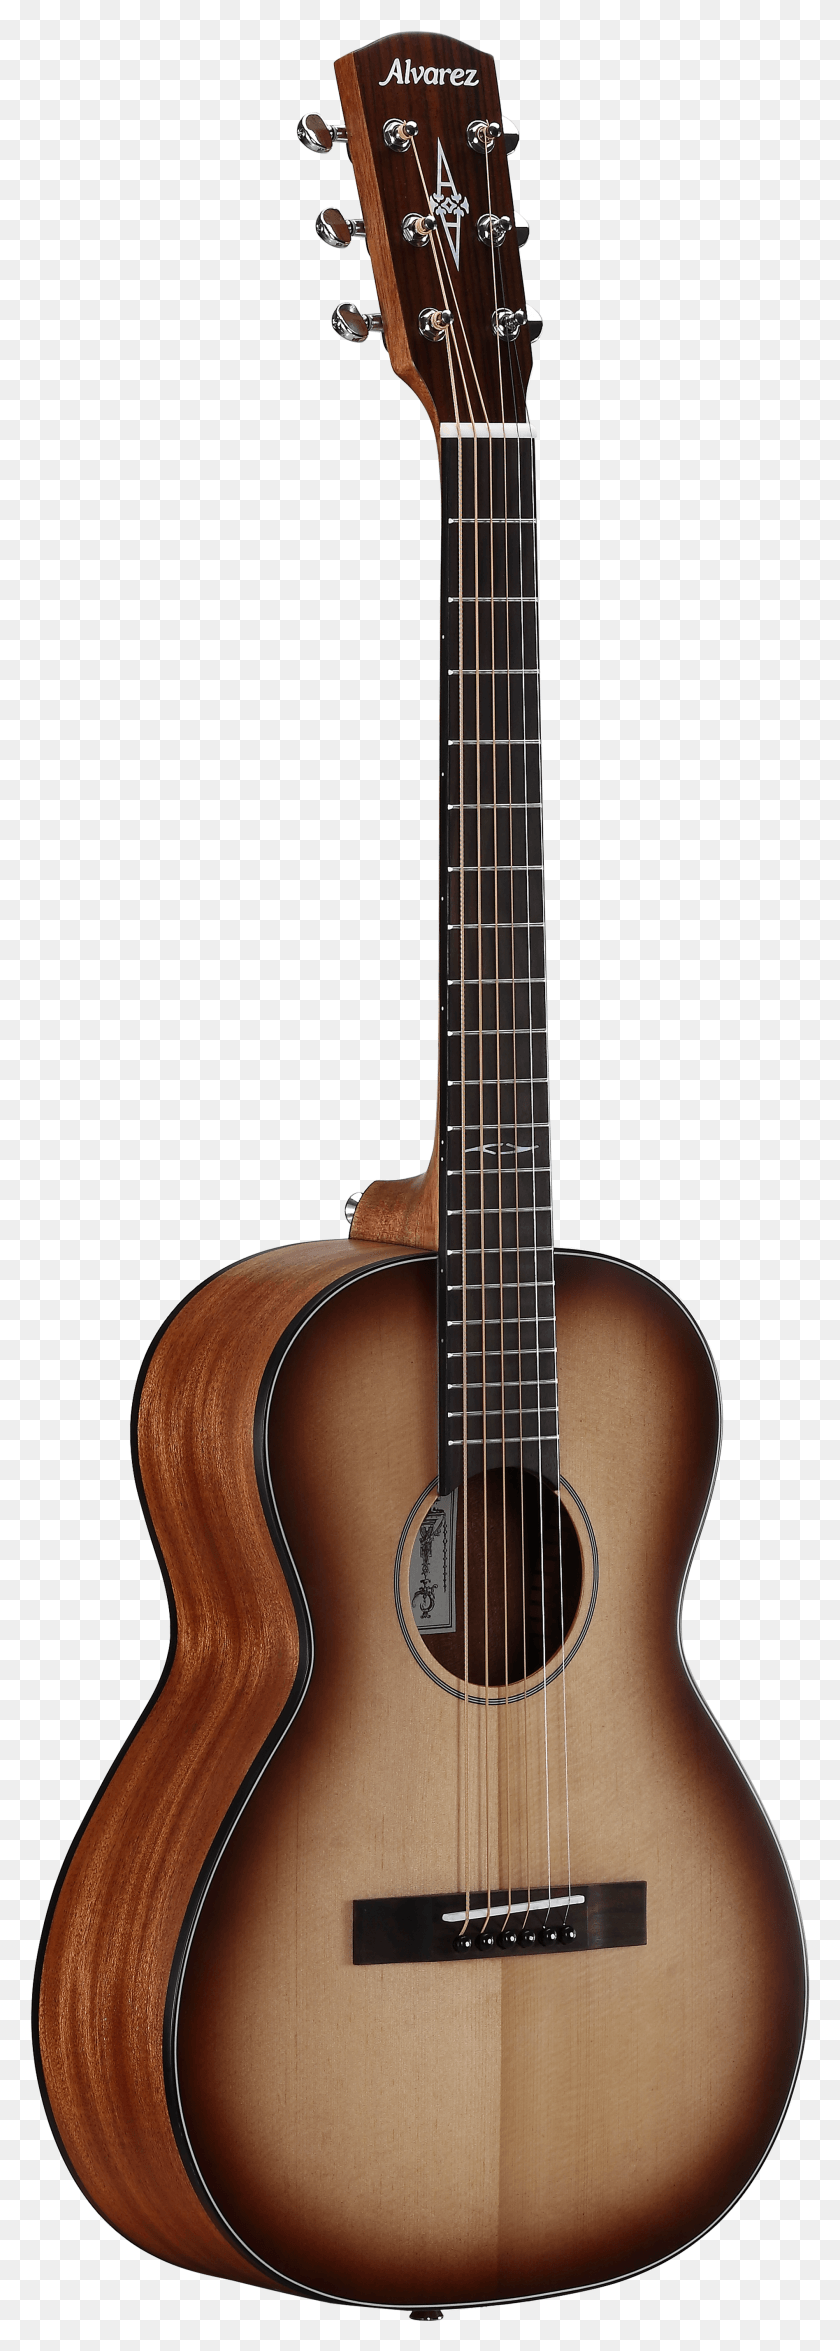 1896x5571 Descargar Png / Guitarra Alvarez Guitarras Hd Png